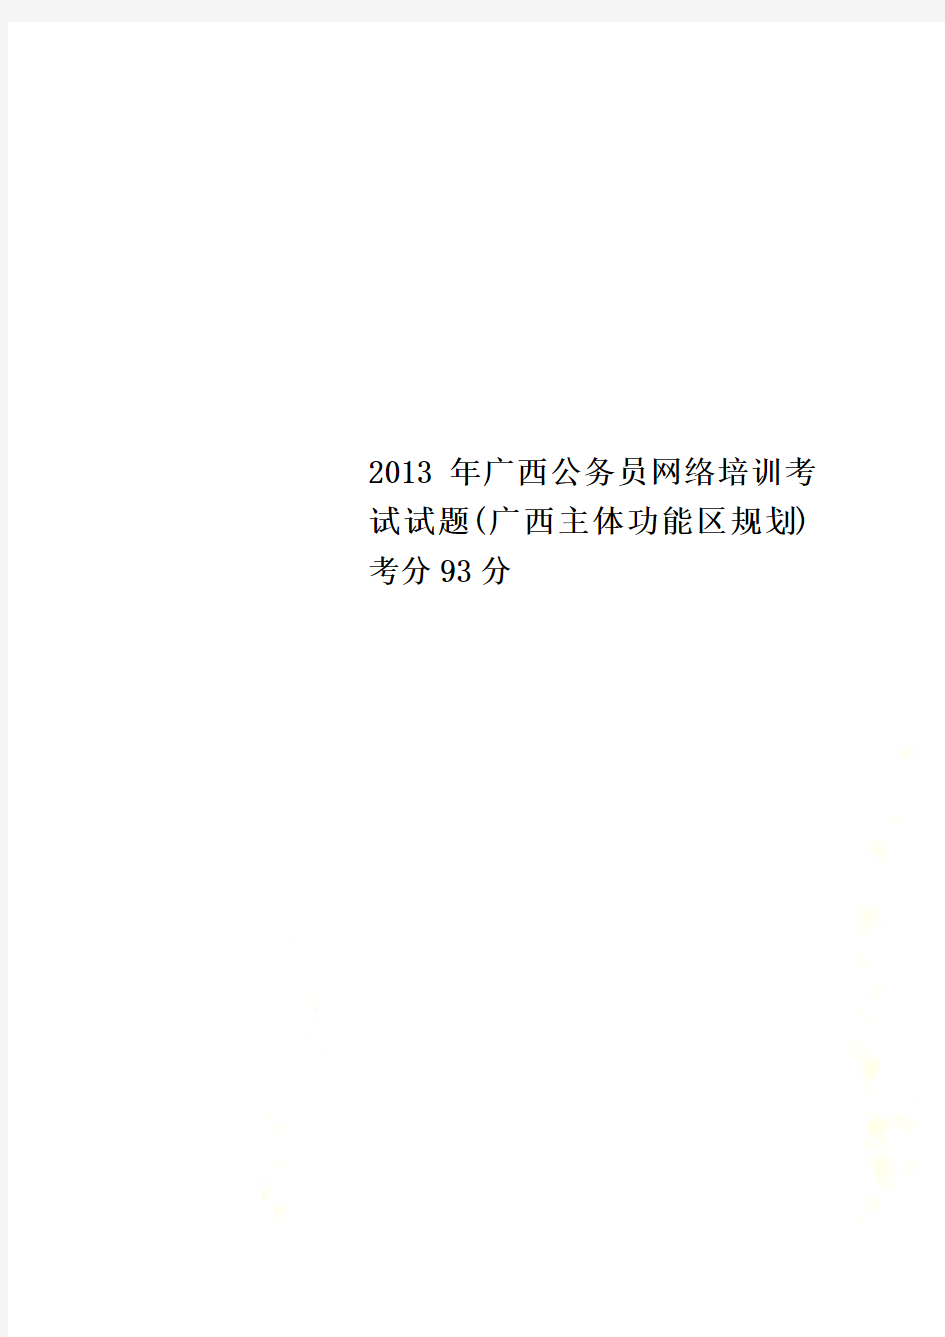 2013年广西公务员网络培训考试试题(广西主体功能区规划)考分93分